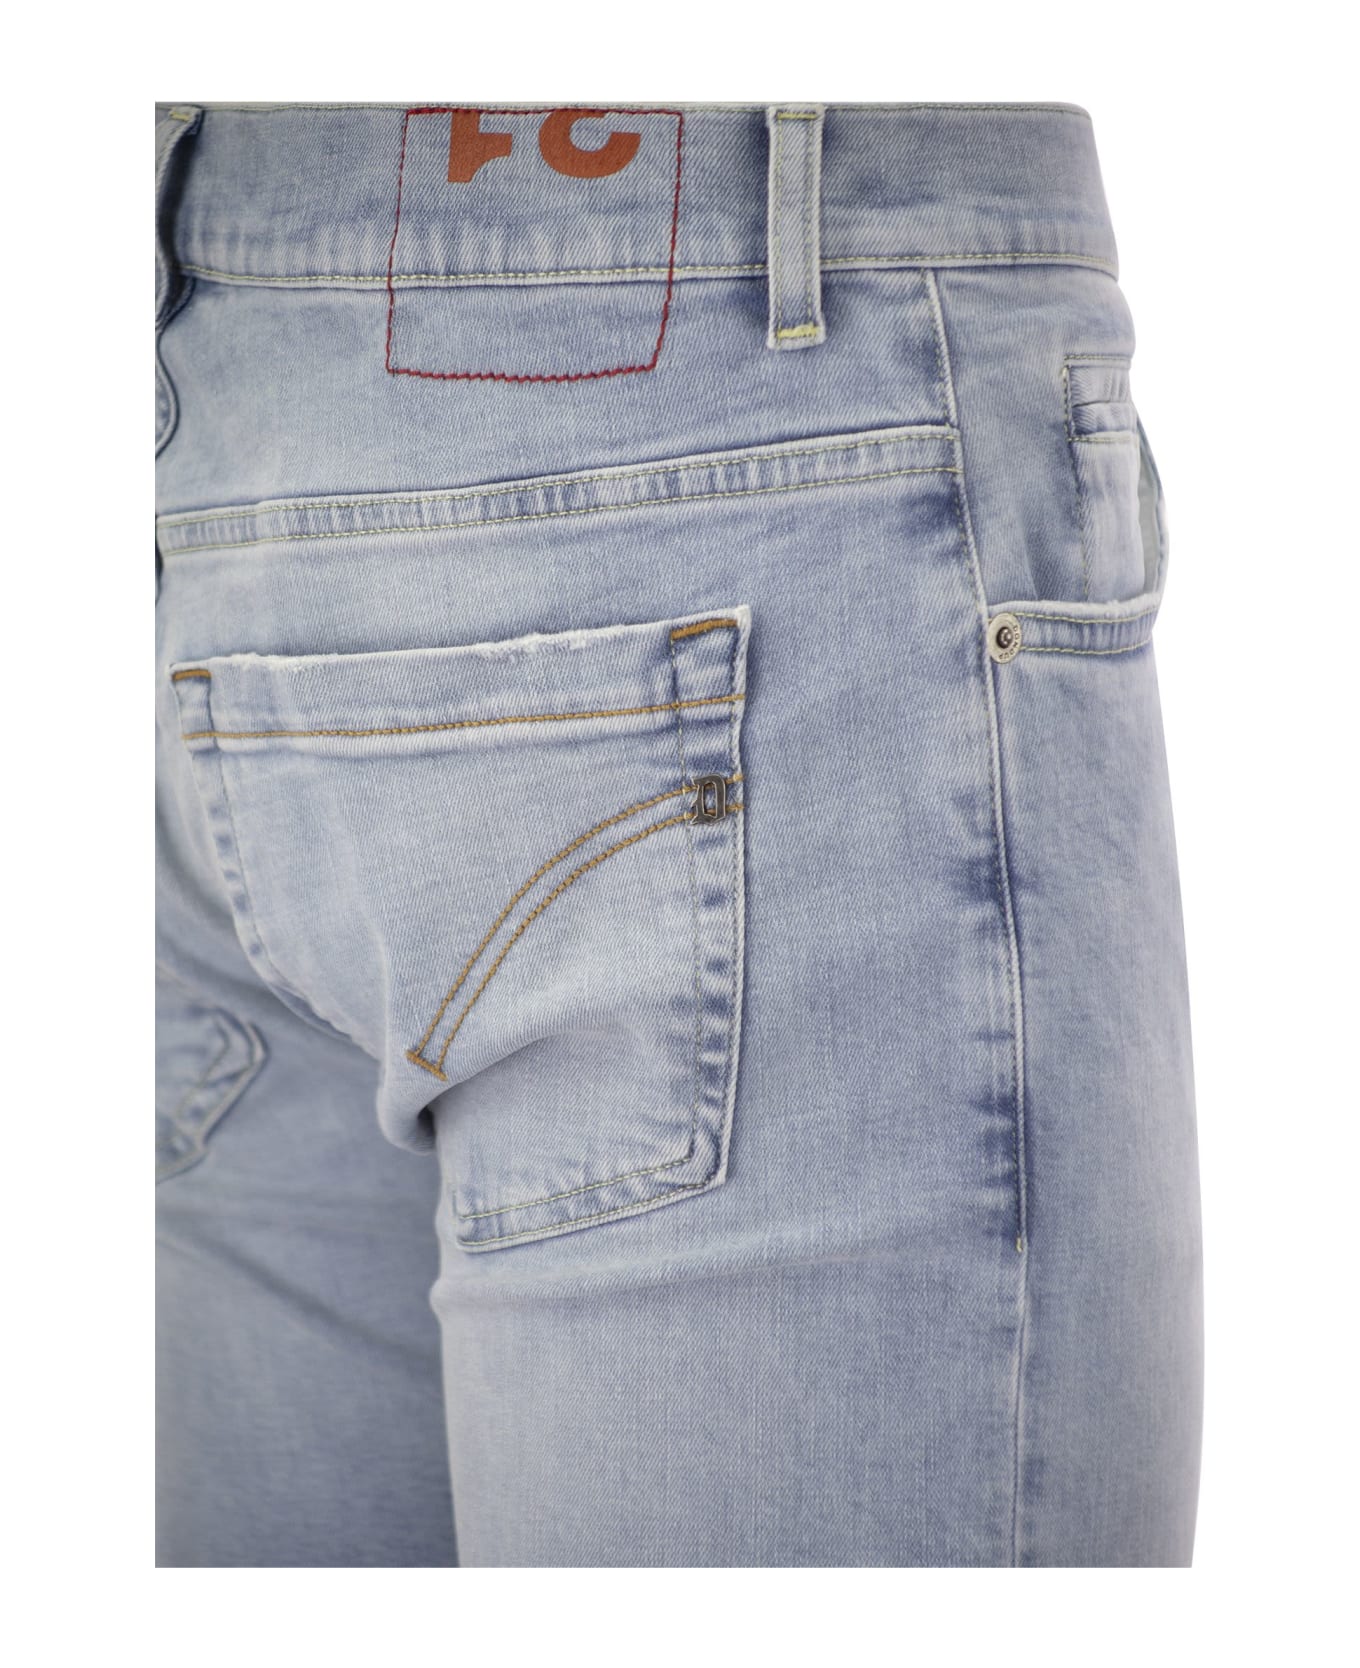 Dondup George - Five Pocket Jeans - Light Denim